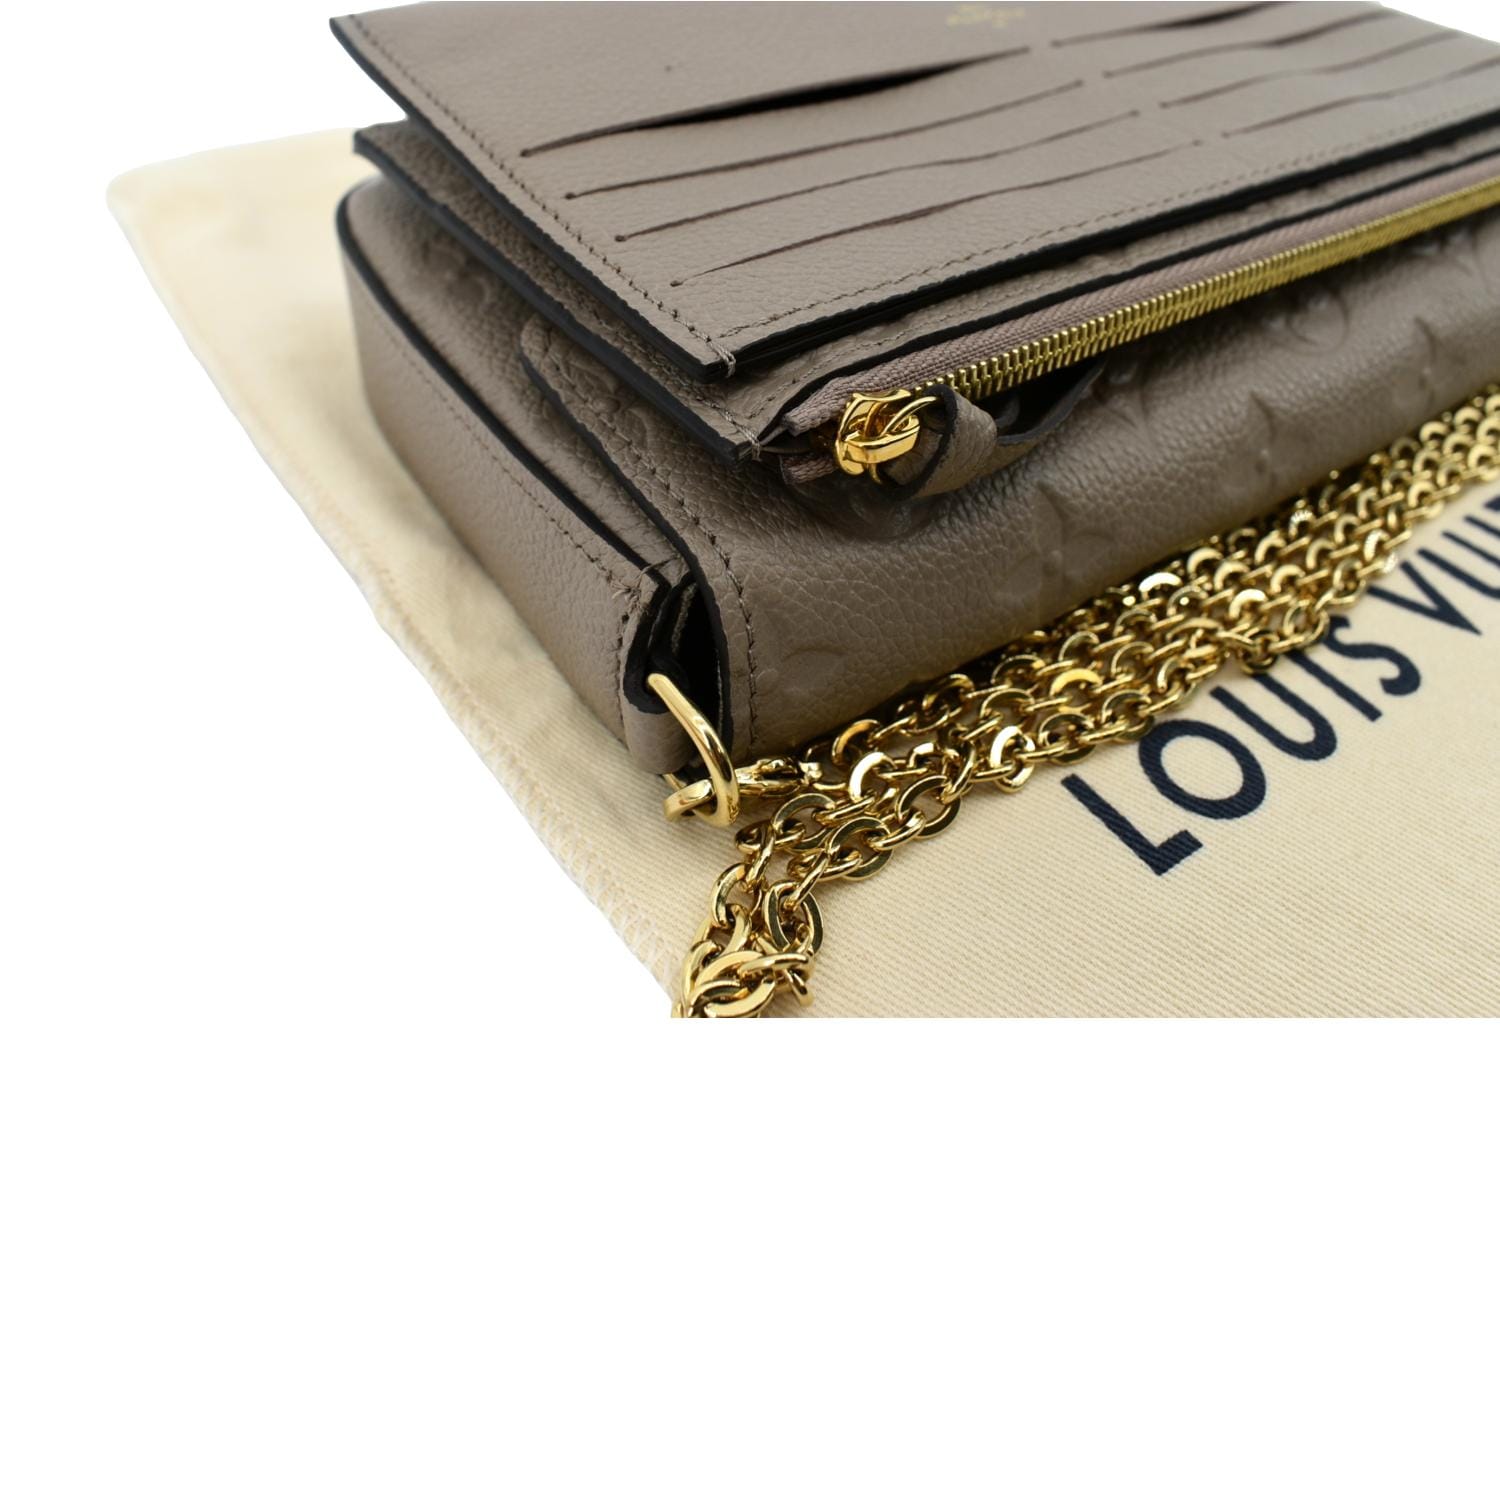 Monogram Empreinte Felicie Wallet in Calfskin, Gold Hardware